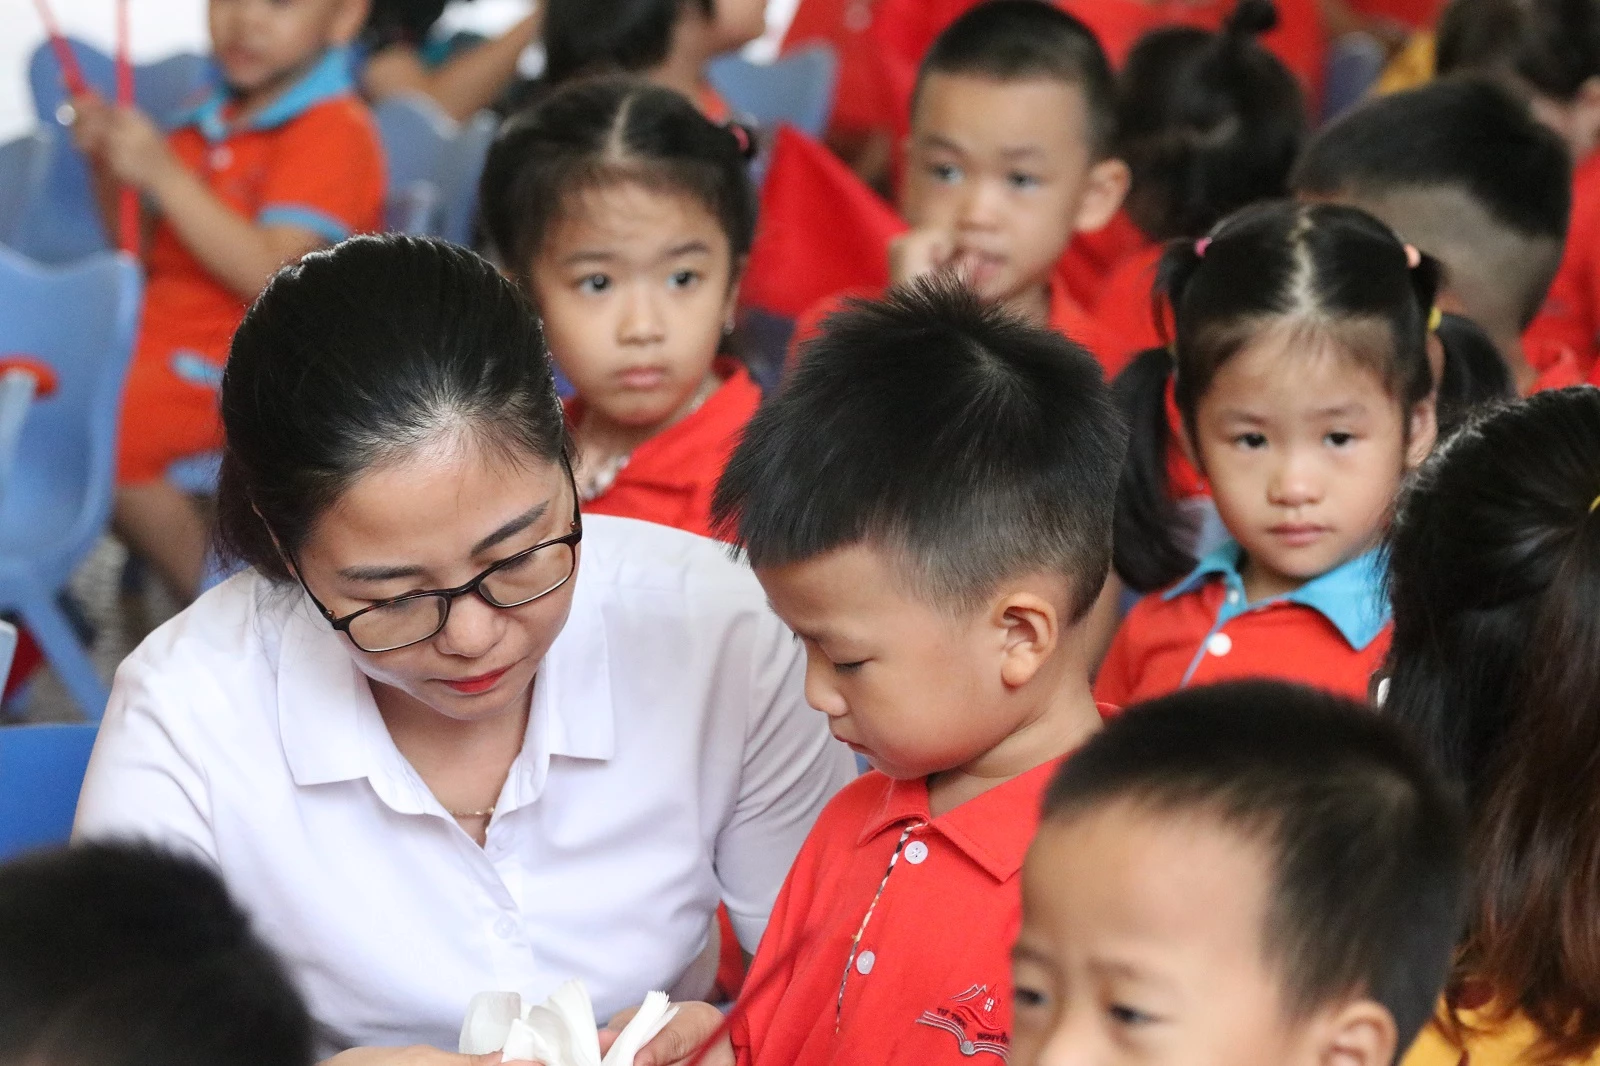 hòa chung với không khí cả nước, khoảng 280.000 học sinh trên địa bàn tỉnh Thừa Thiên - Huế nô nức đến trường, dự lễ khai giảng năm học 2022-2023 